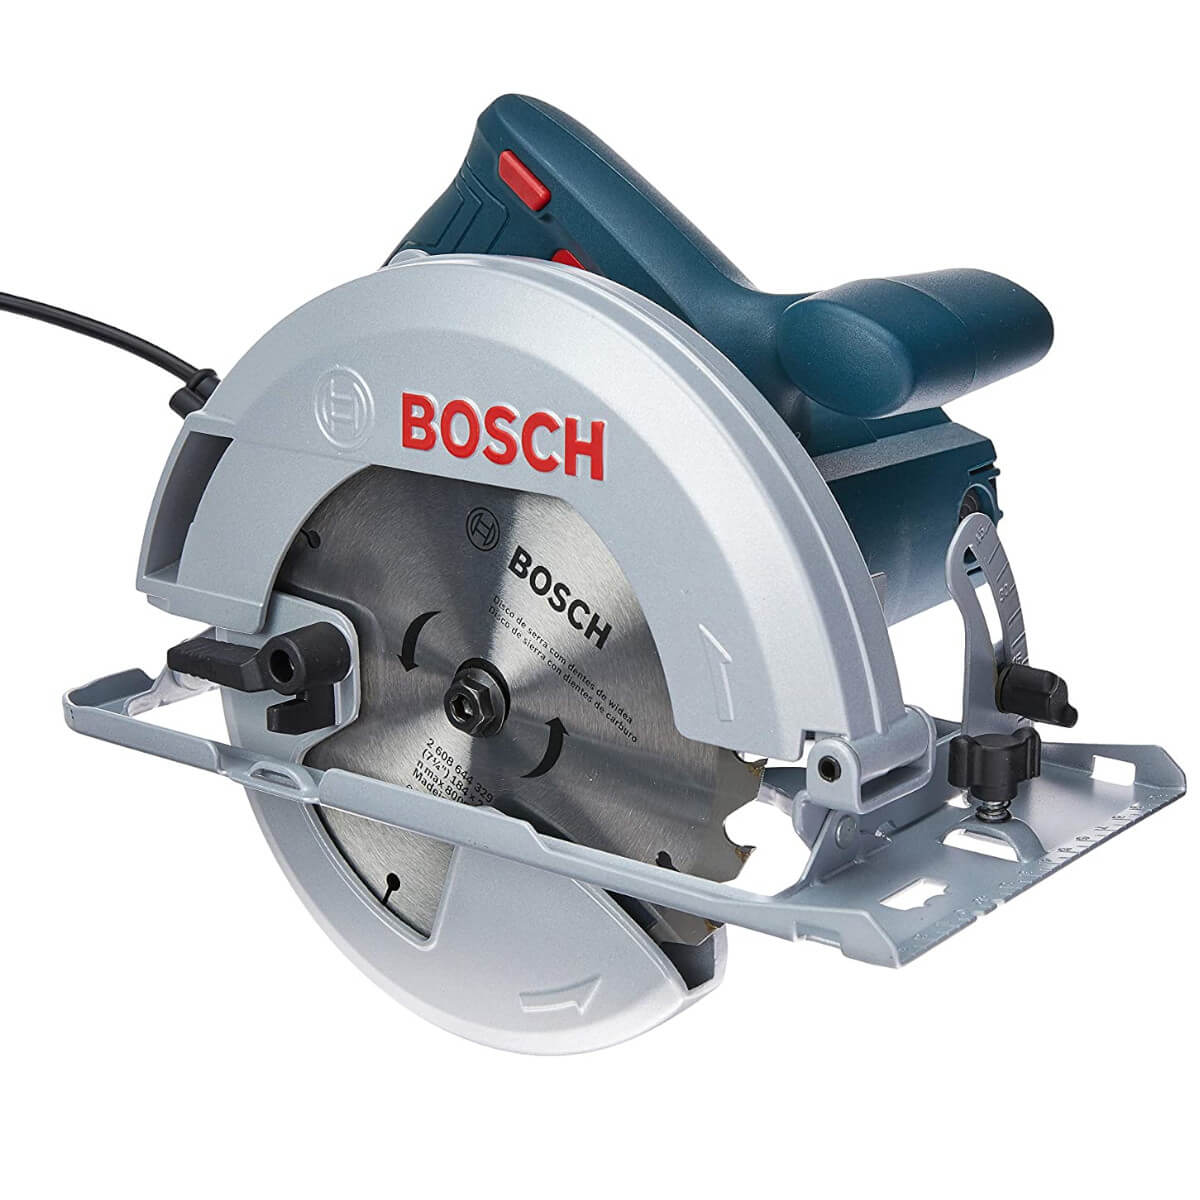 Serra circular elétrica Professional 1500W 110v GKS150 Bosch